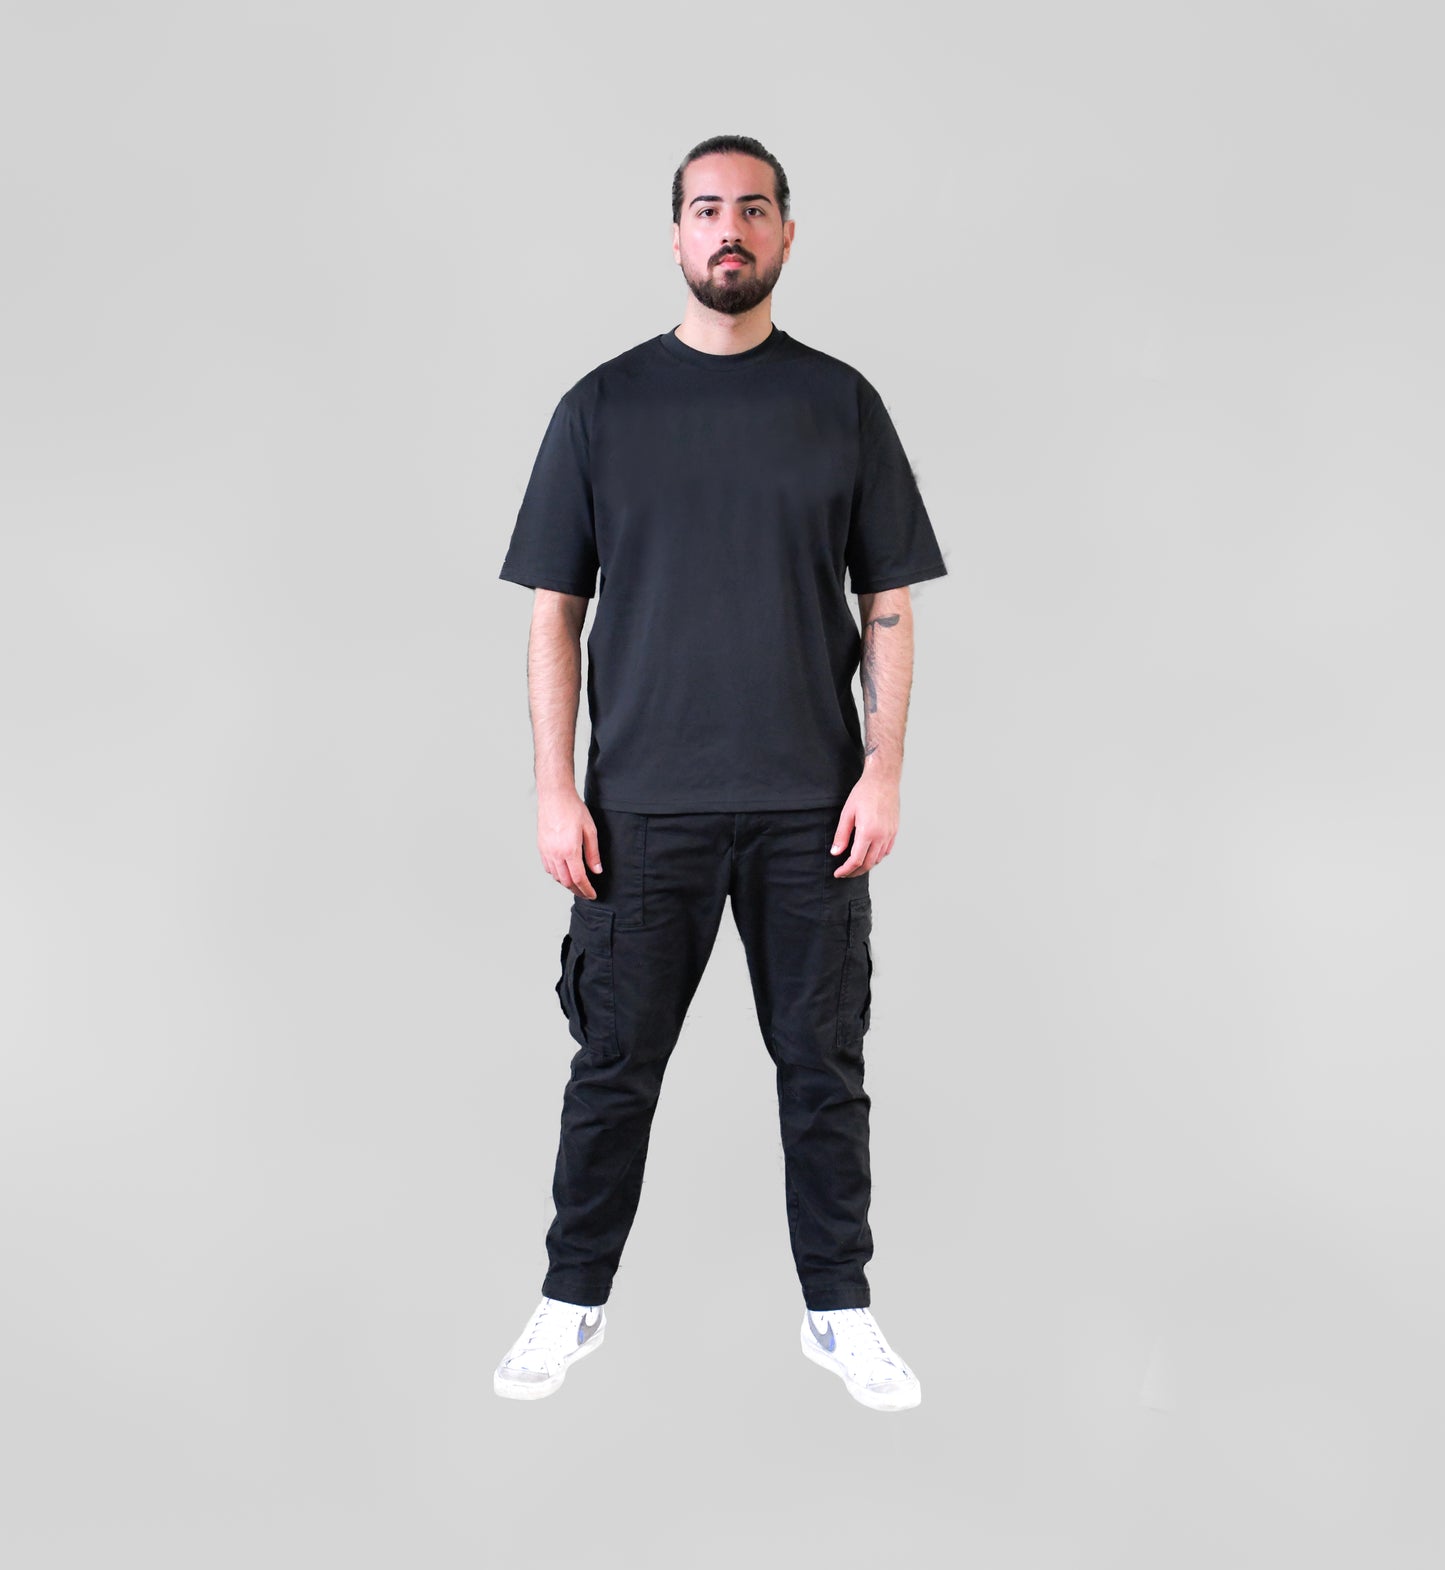 2FRATELLI Oversized T-Shirt black (unisex) - 2FRATELLI